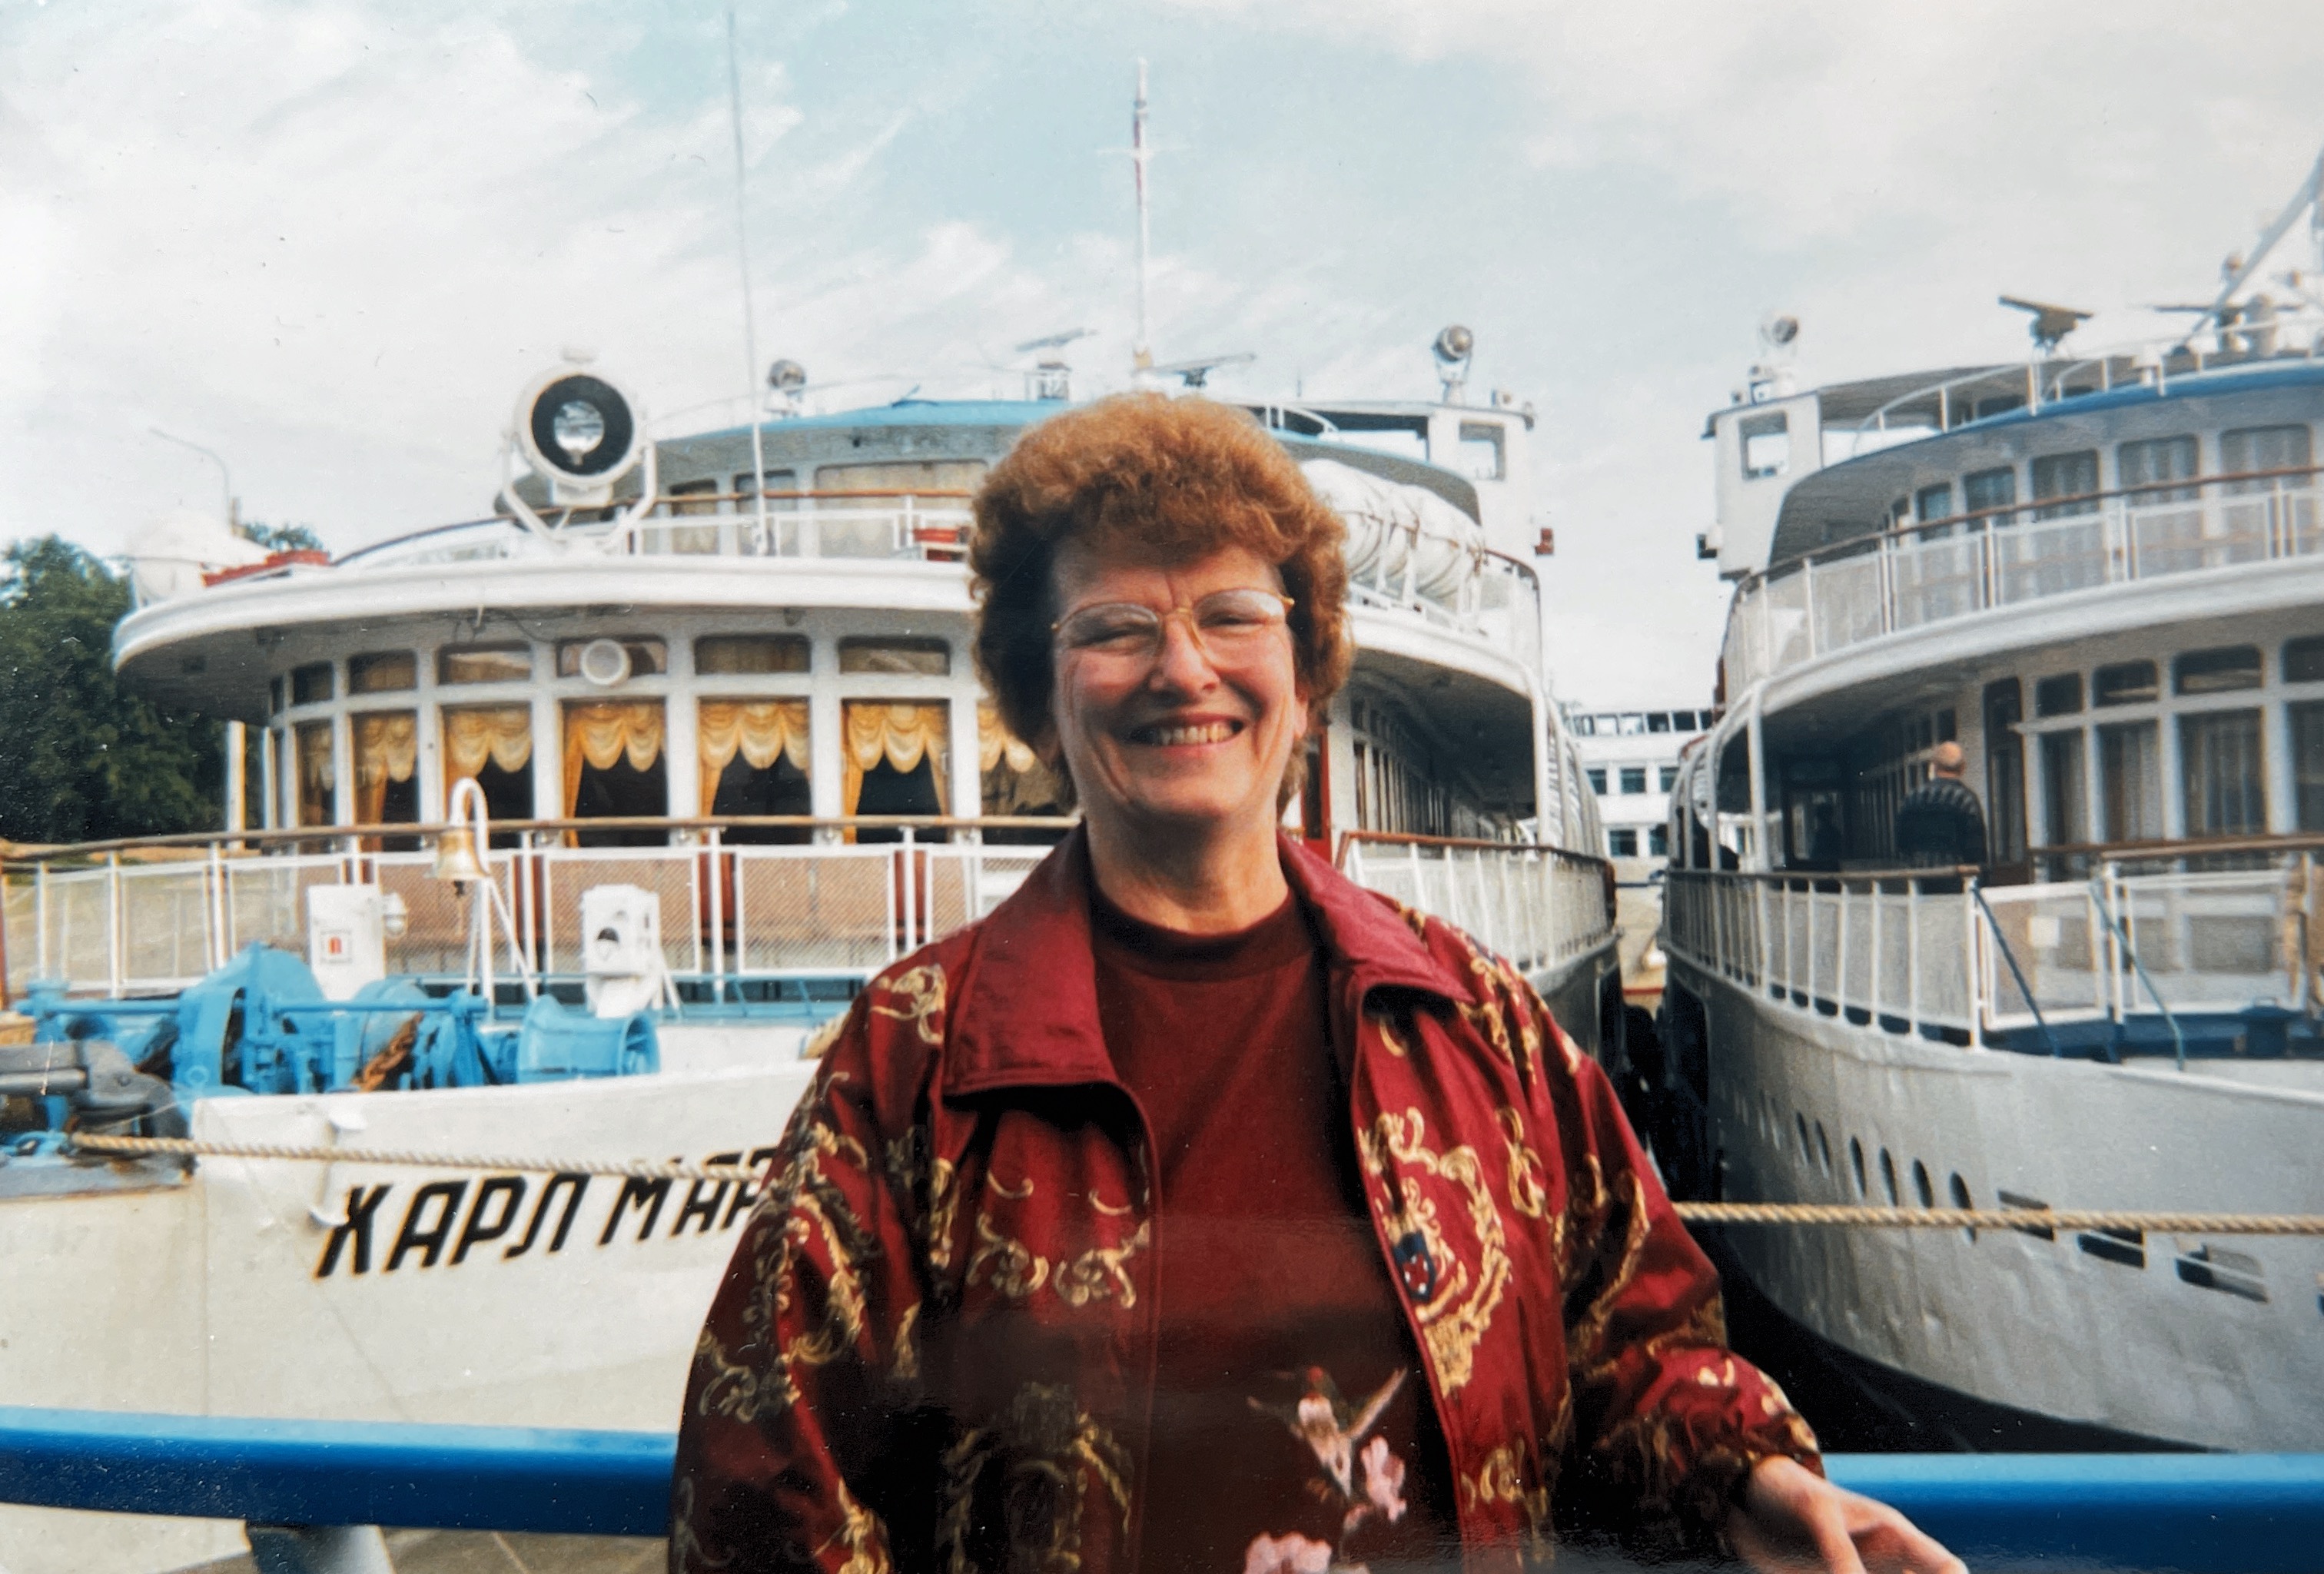 1998 xmas card
River cruise
Rosanna Fowler
Russia trip